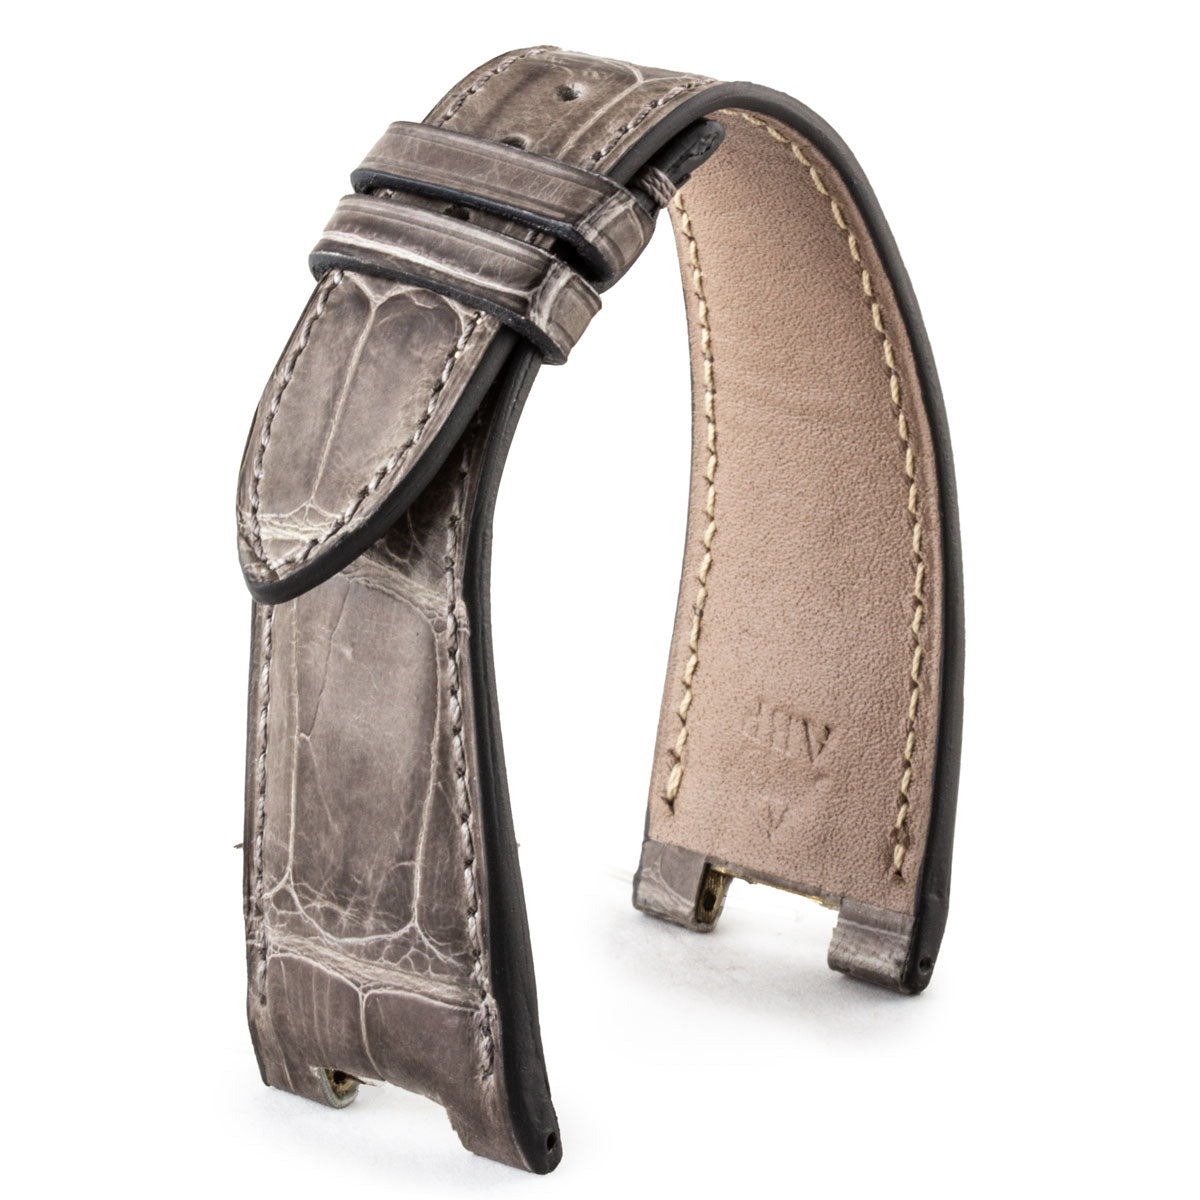 Patek Philippe Nautilus - Bracelet de montre cuir - Alligator tannage spécial waxé (marron / gris / miel / bleu) - watch band leather strap - ABP Concept -